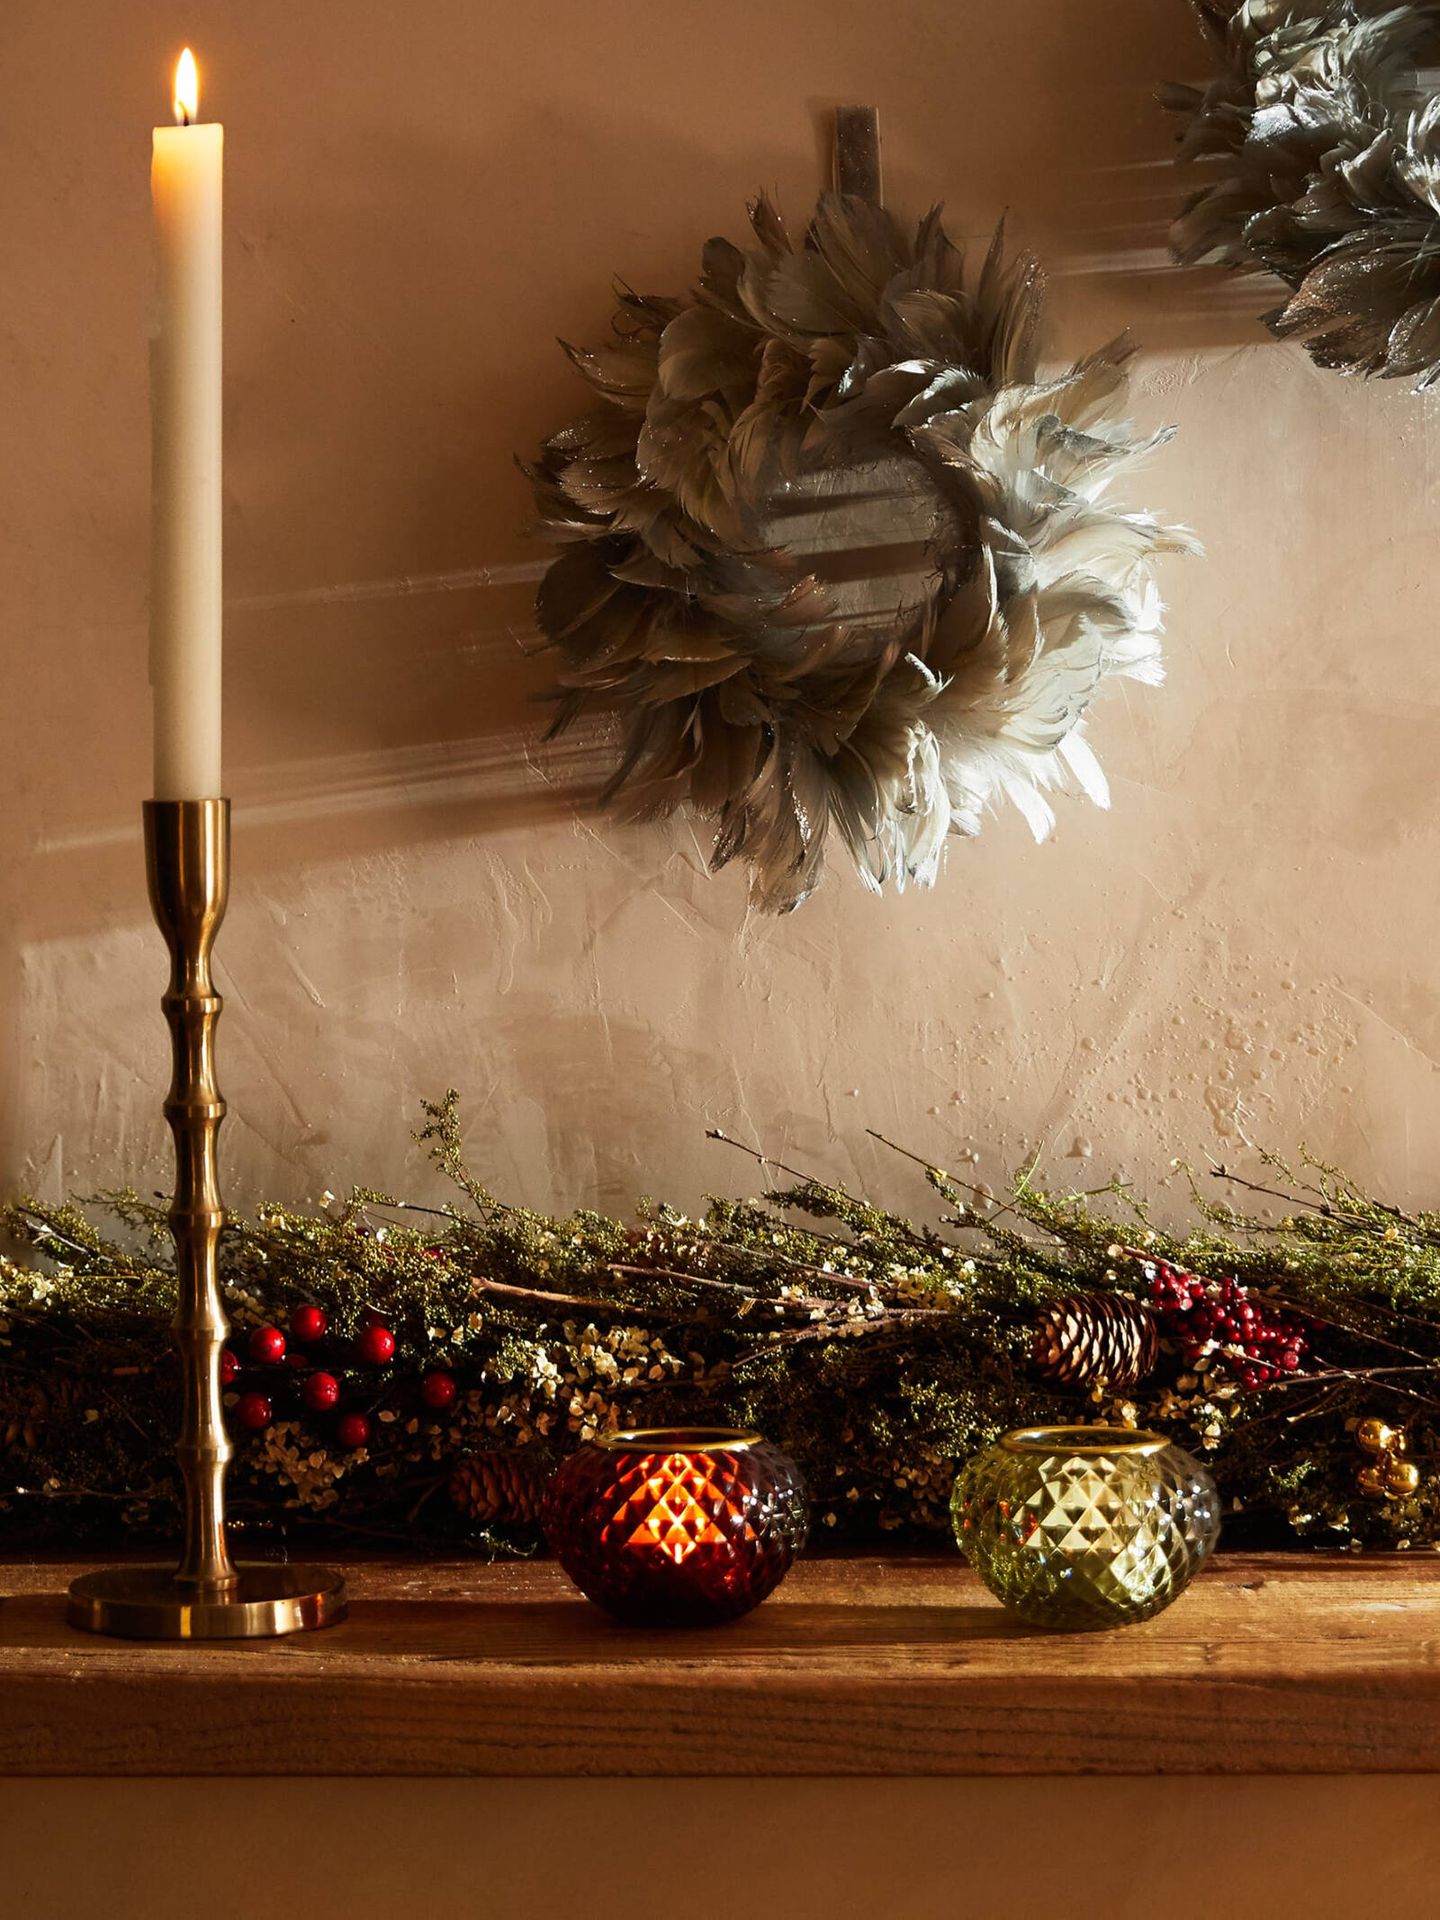 Accesorios navideños para decorar la puerta de casa. (Cortesía/Zara Home)